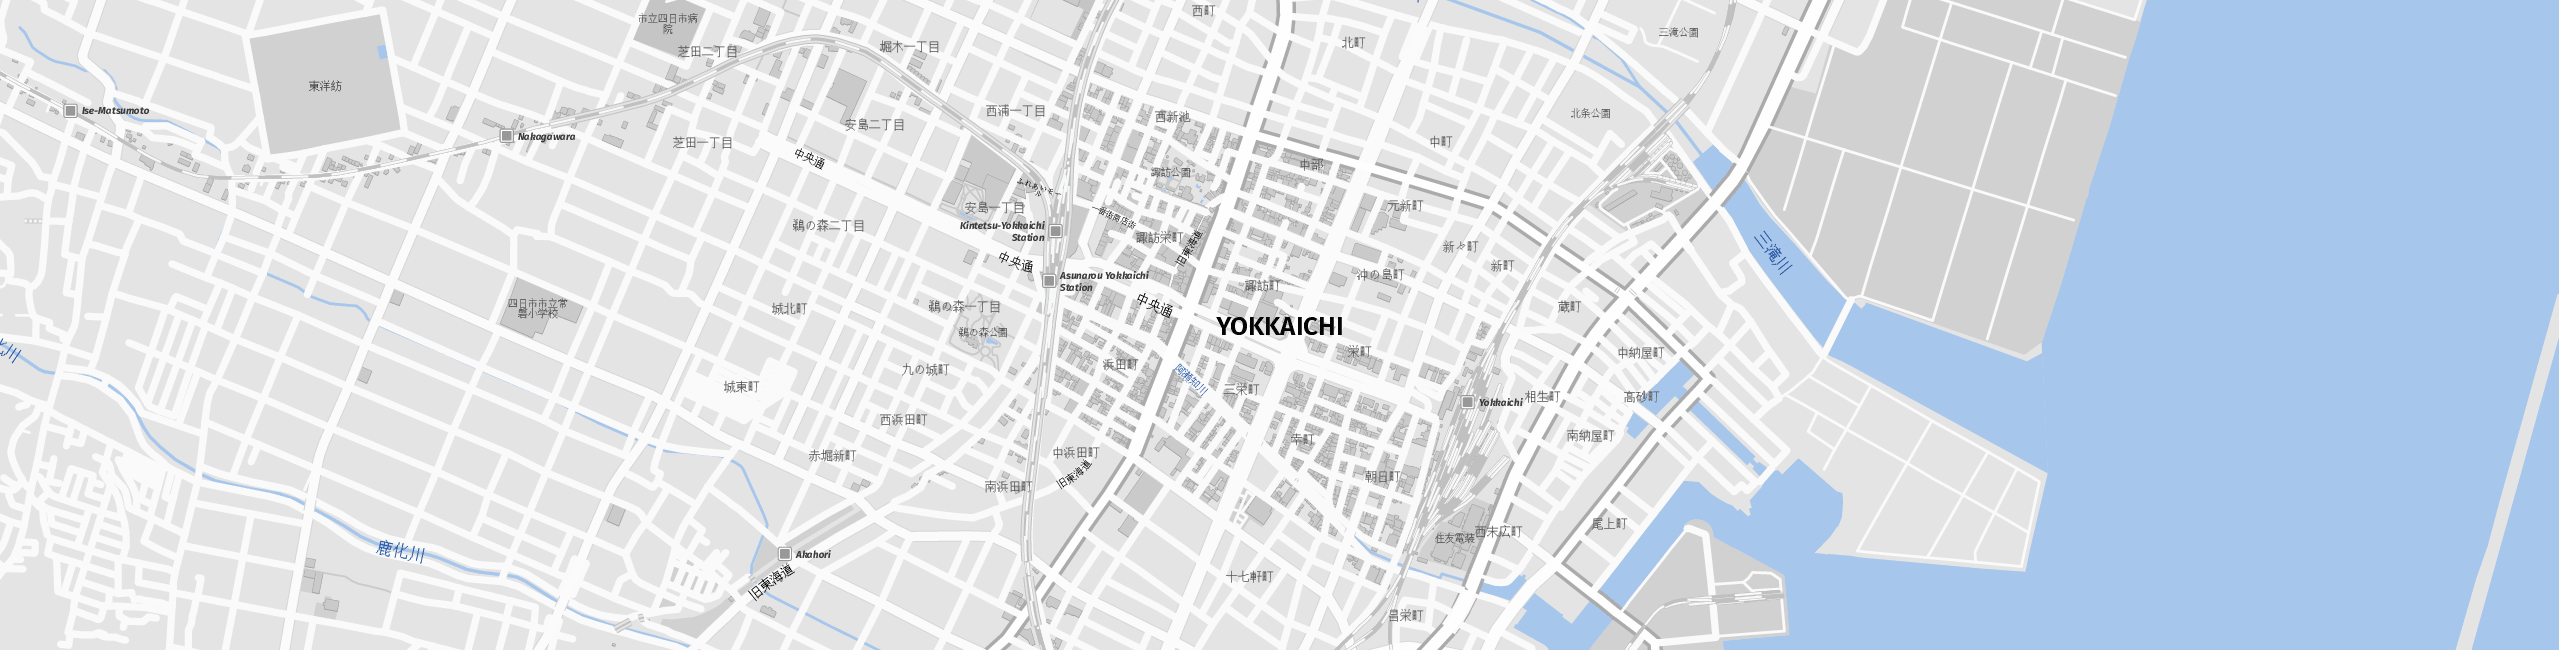 Stadtplan Yokkaichi zum Downloaden.